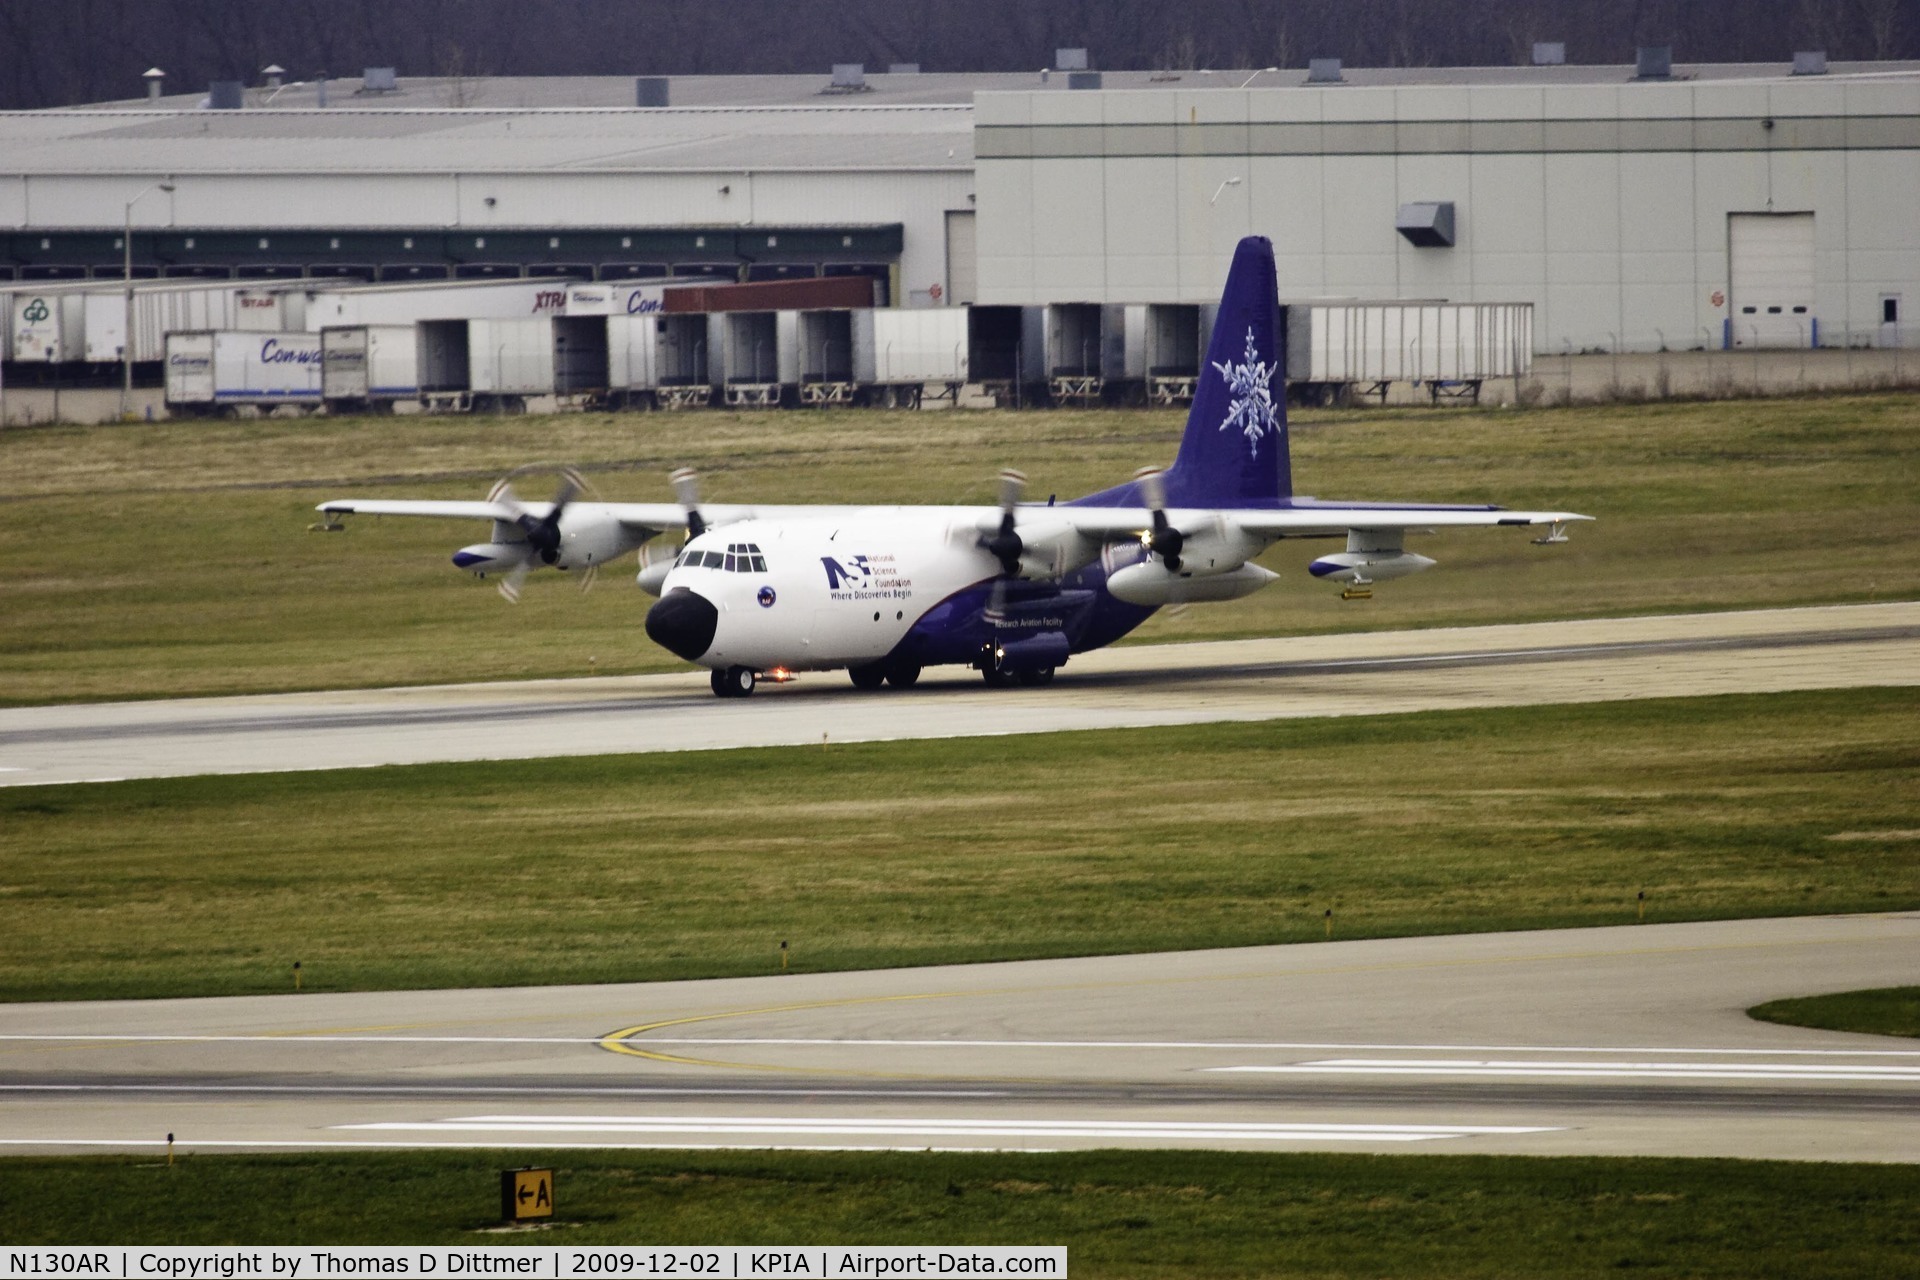 N130AR, 1984 Lockheed EC-130Q Hercules C/N 382-4984, N130AR departure roll from Runway 4 at Peoria Illinois for departure